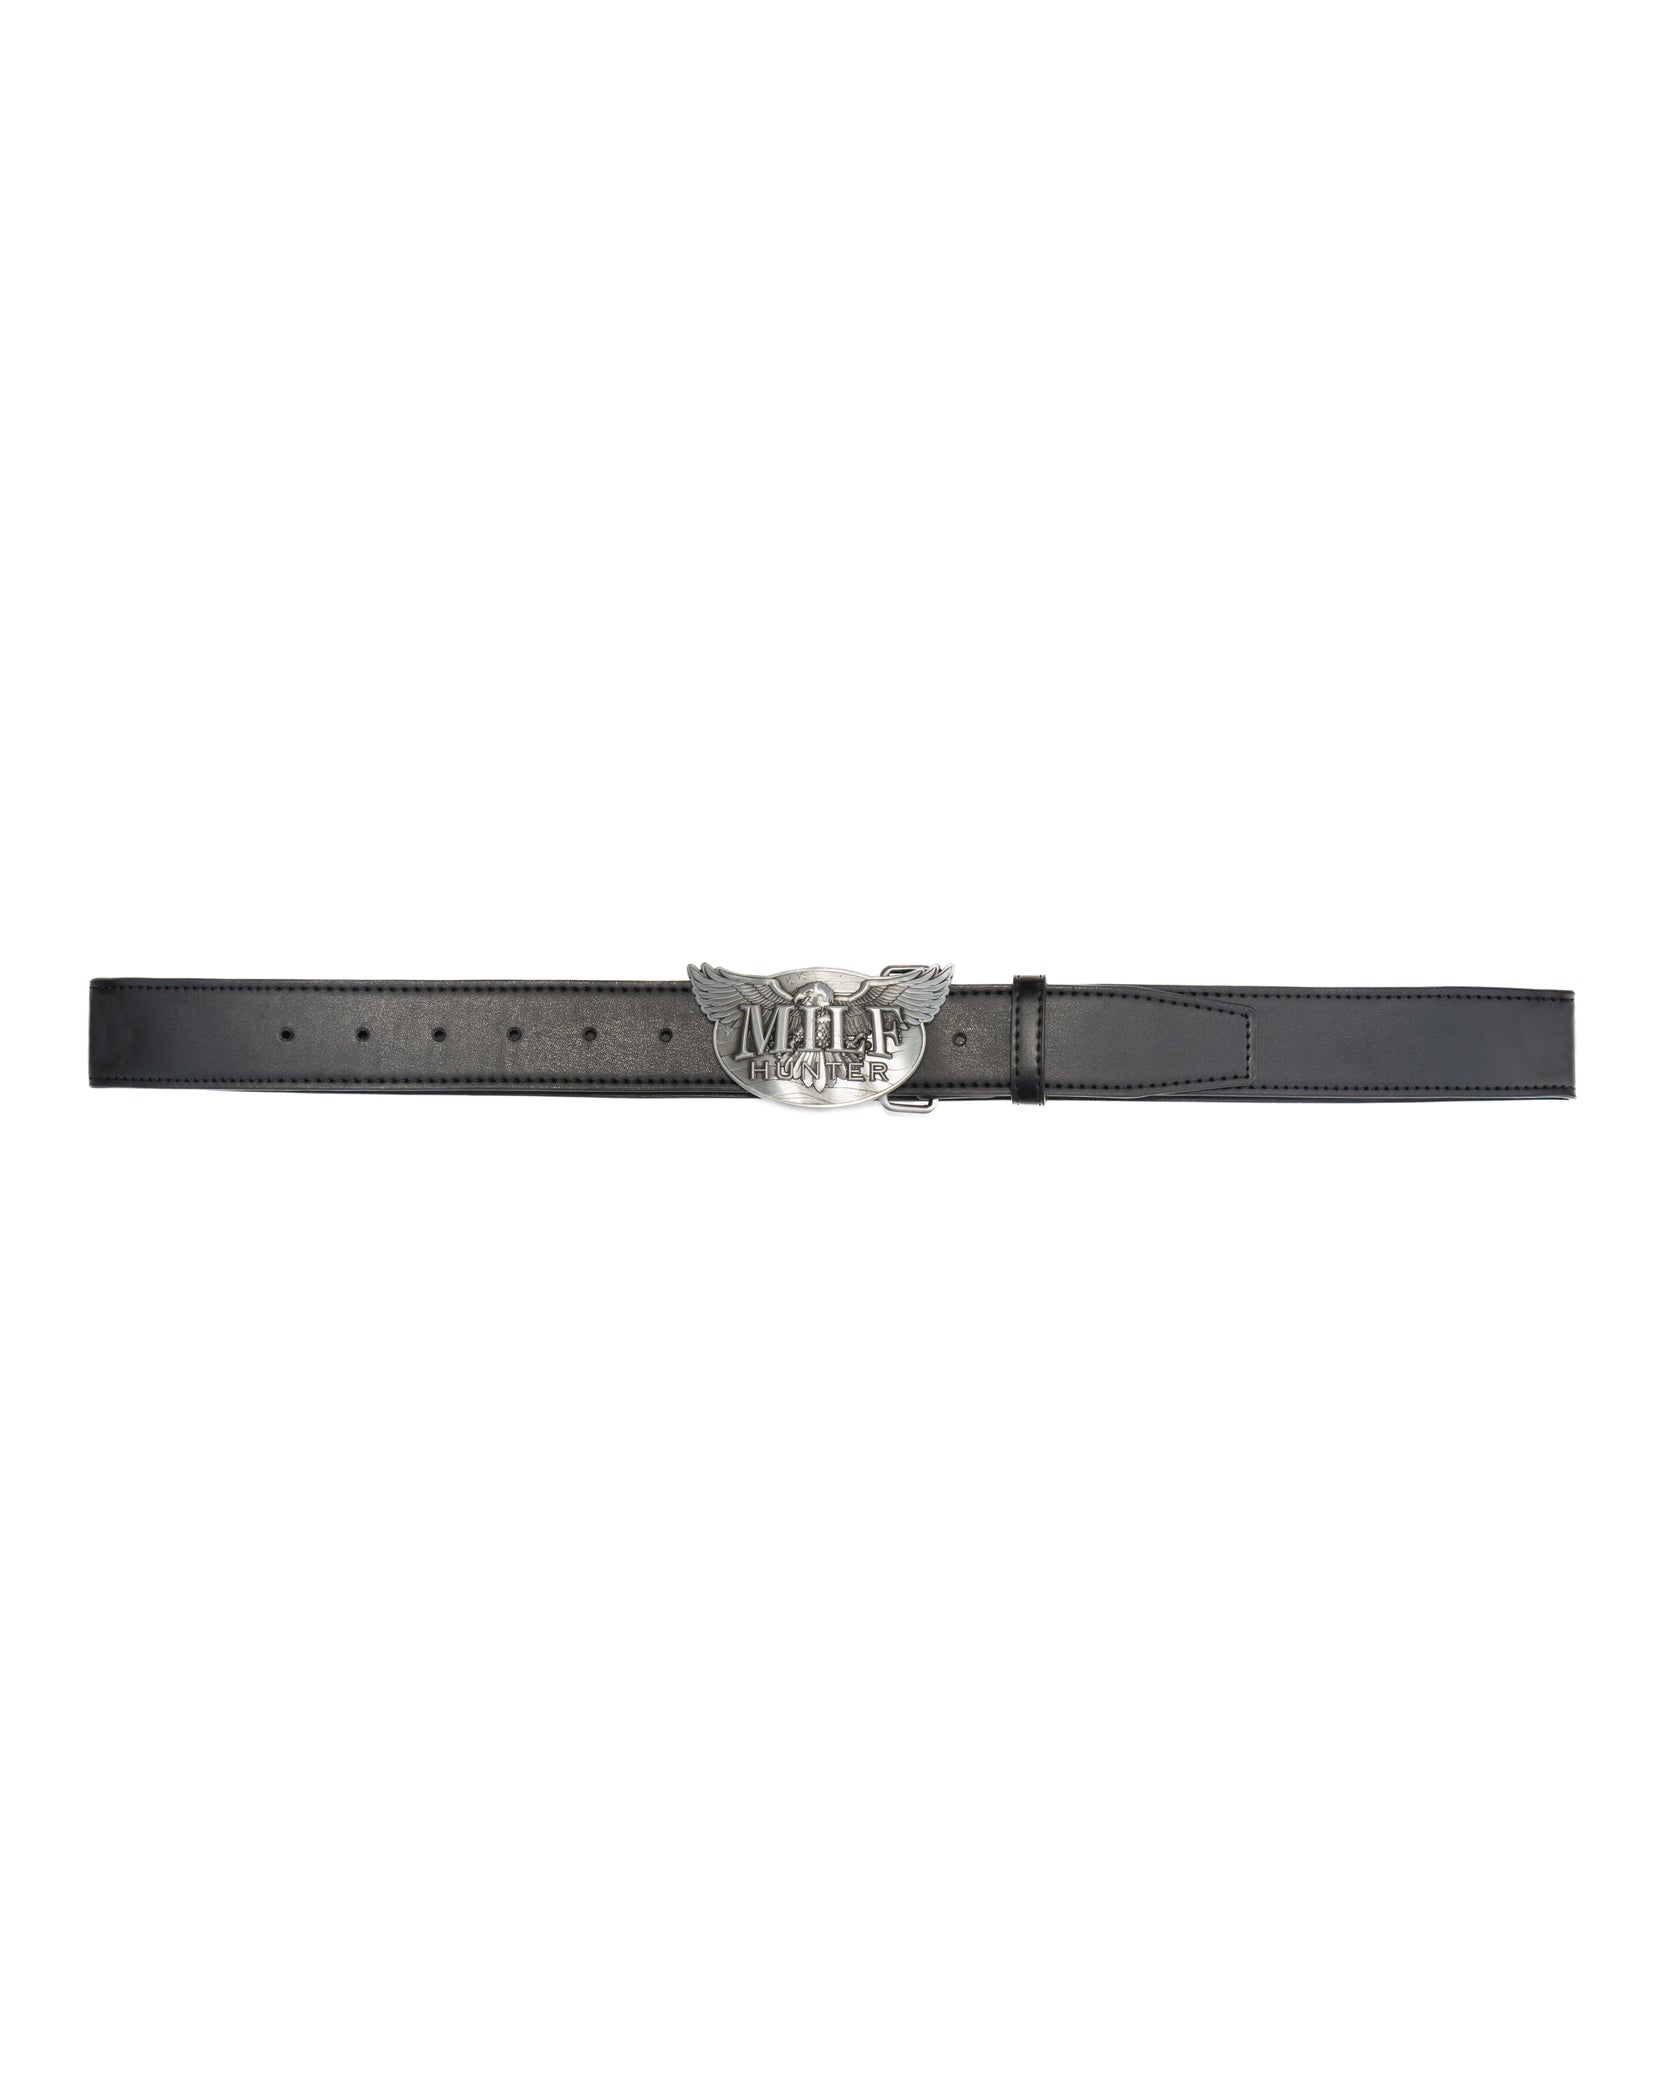 MlLF Hunter Leather Belt - Black / Silver  or